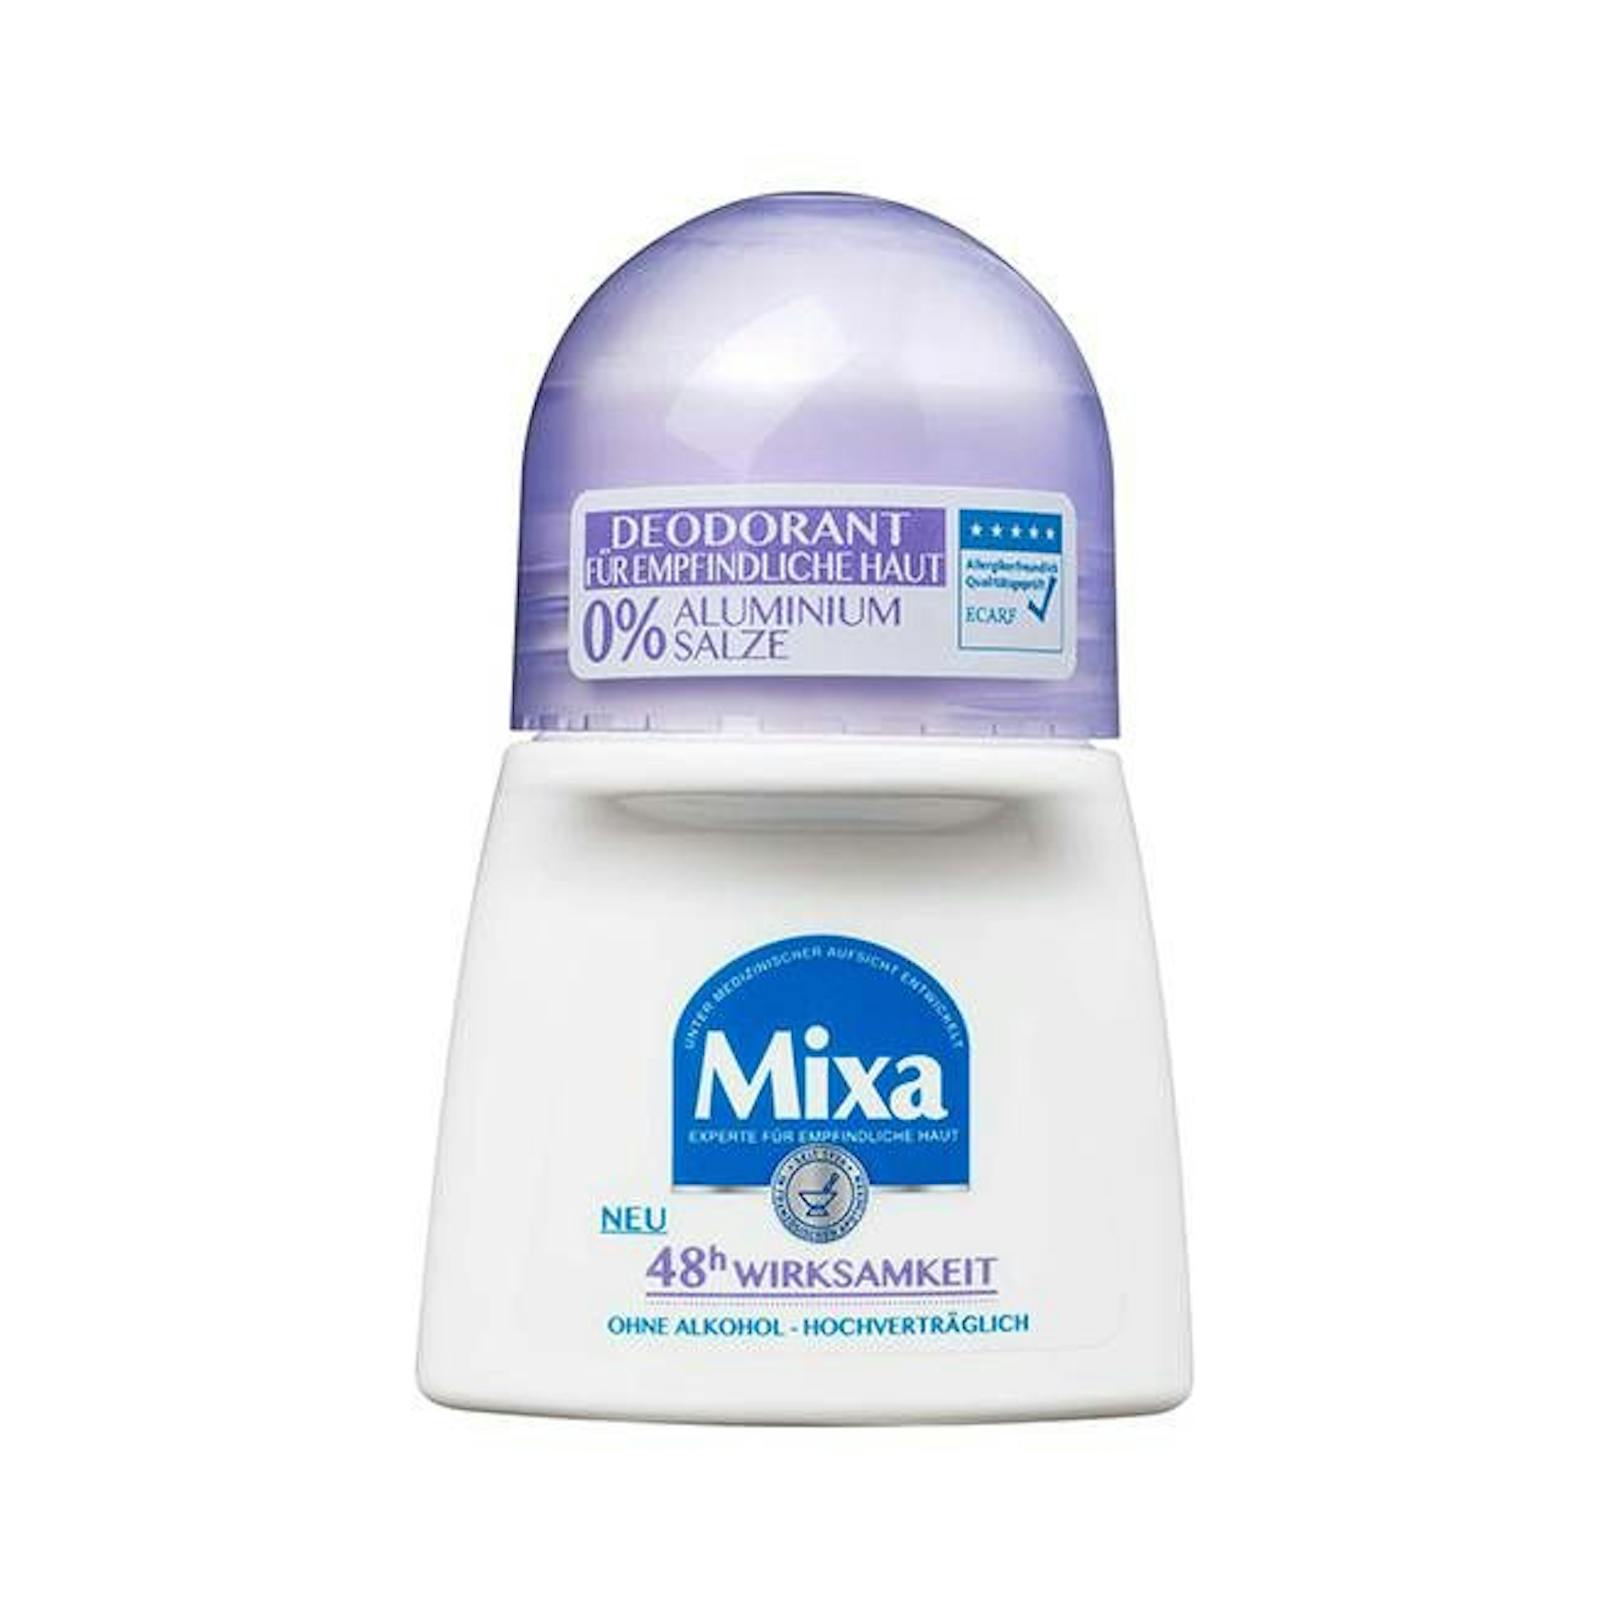 "48h Wirksamkeit Gegen Geruch" von&nbsp;L'Oréal Mixa